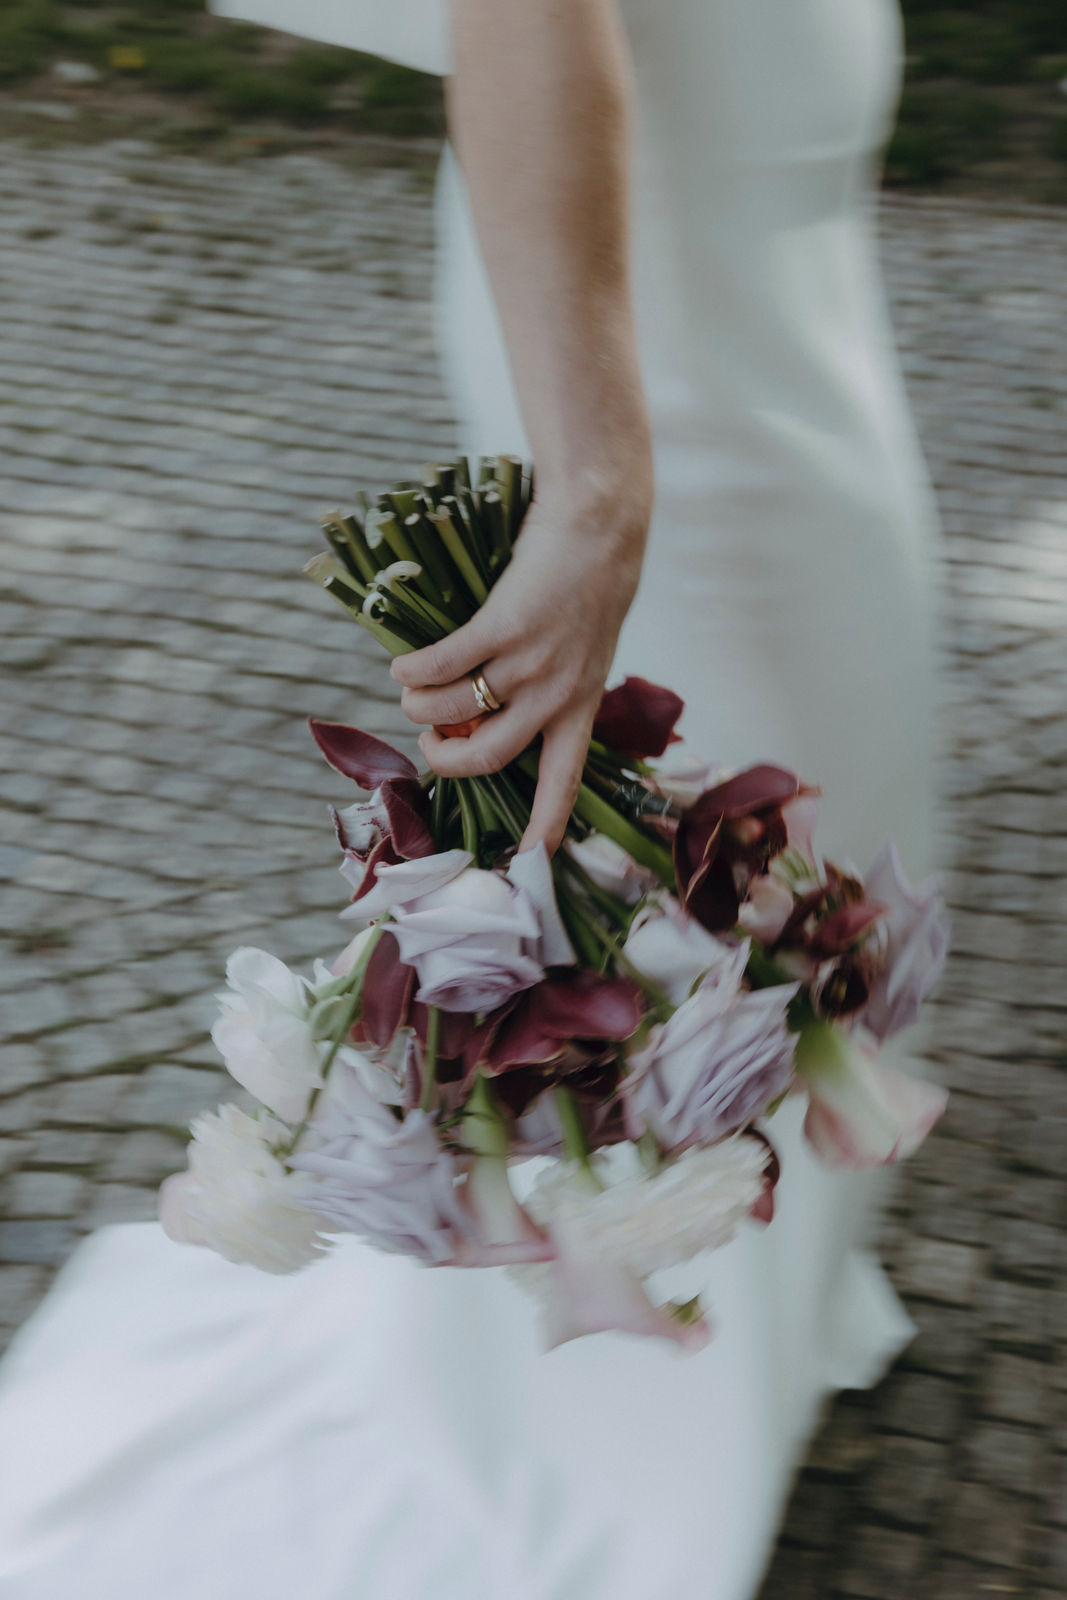 Bildausschnitt einer Braut. Man sieht die Hand mit Ehering und Verlobungsring, den Brautstrauß in Lilatönen und das Brautkleid